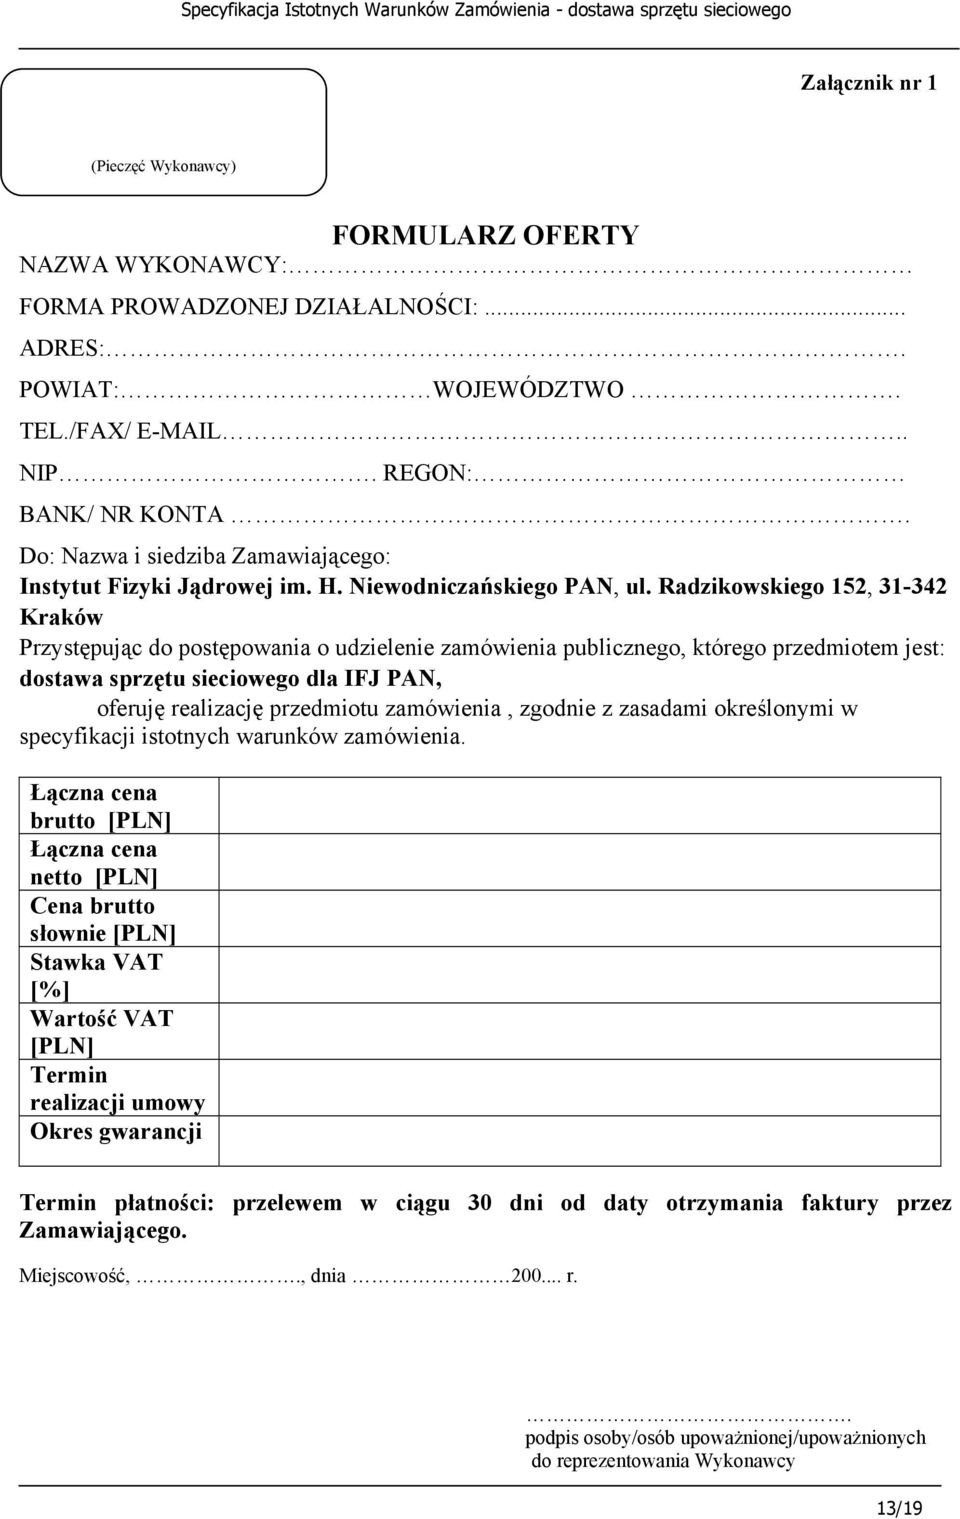 Radzikowskiego 152, 31-342 Kraków Przystępując do postępowania o udzielenie zamówienia publicznego, którego przedmiotem jest: dostawa sprzętu sieciowego dla IFJ PAN, oferuję realizację przedmiotu